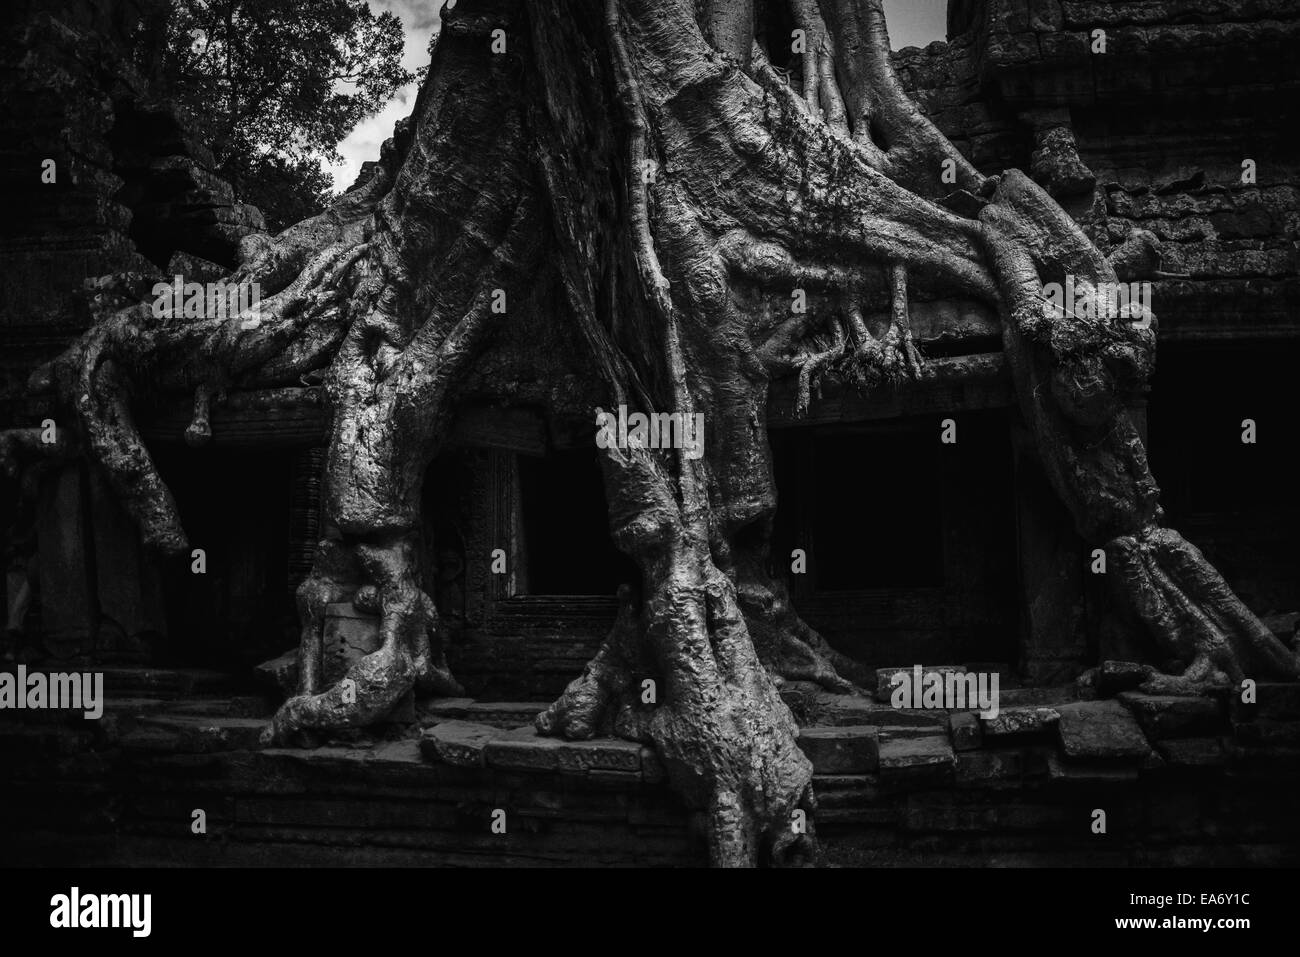 Ein riesigen Dschungel Baum wächst im Laufe einer Tempelwand im Angkor Wat Tempel Komplex; Siem Reap, Kambodscha Stockfoto